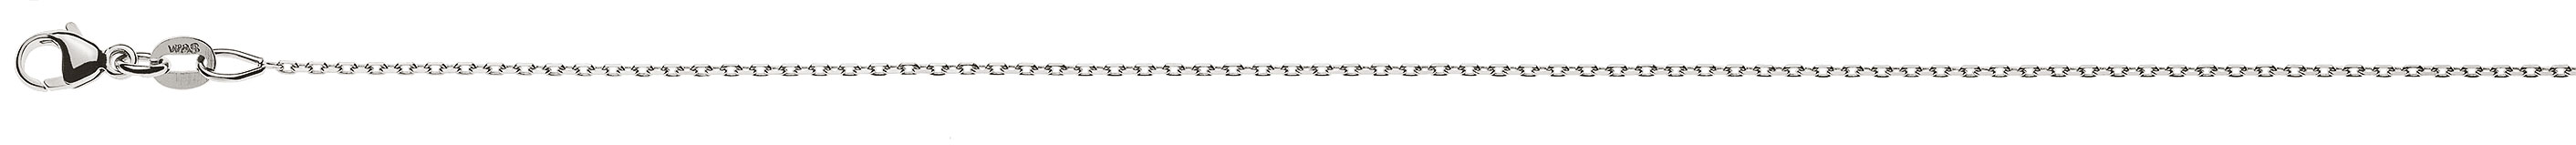 AURONOS Prestige Halskette Weissgold 18K Anker 4-fach geschliffen 60cm 0.9mm